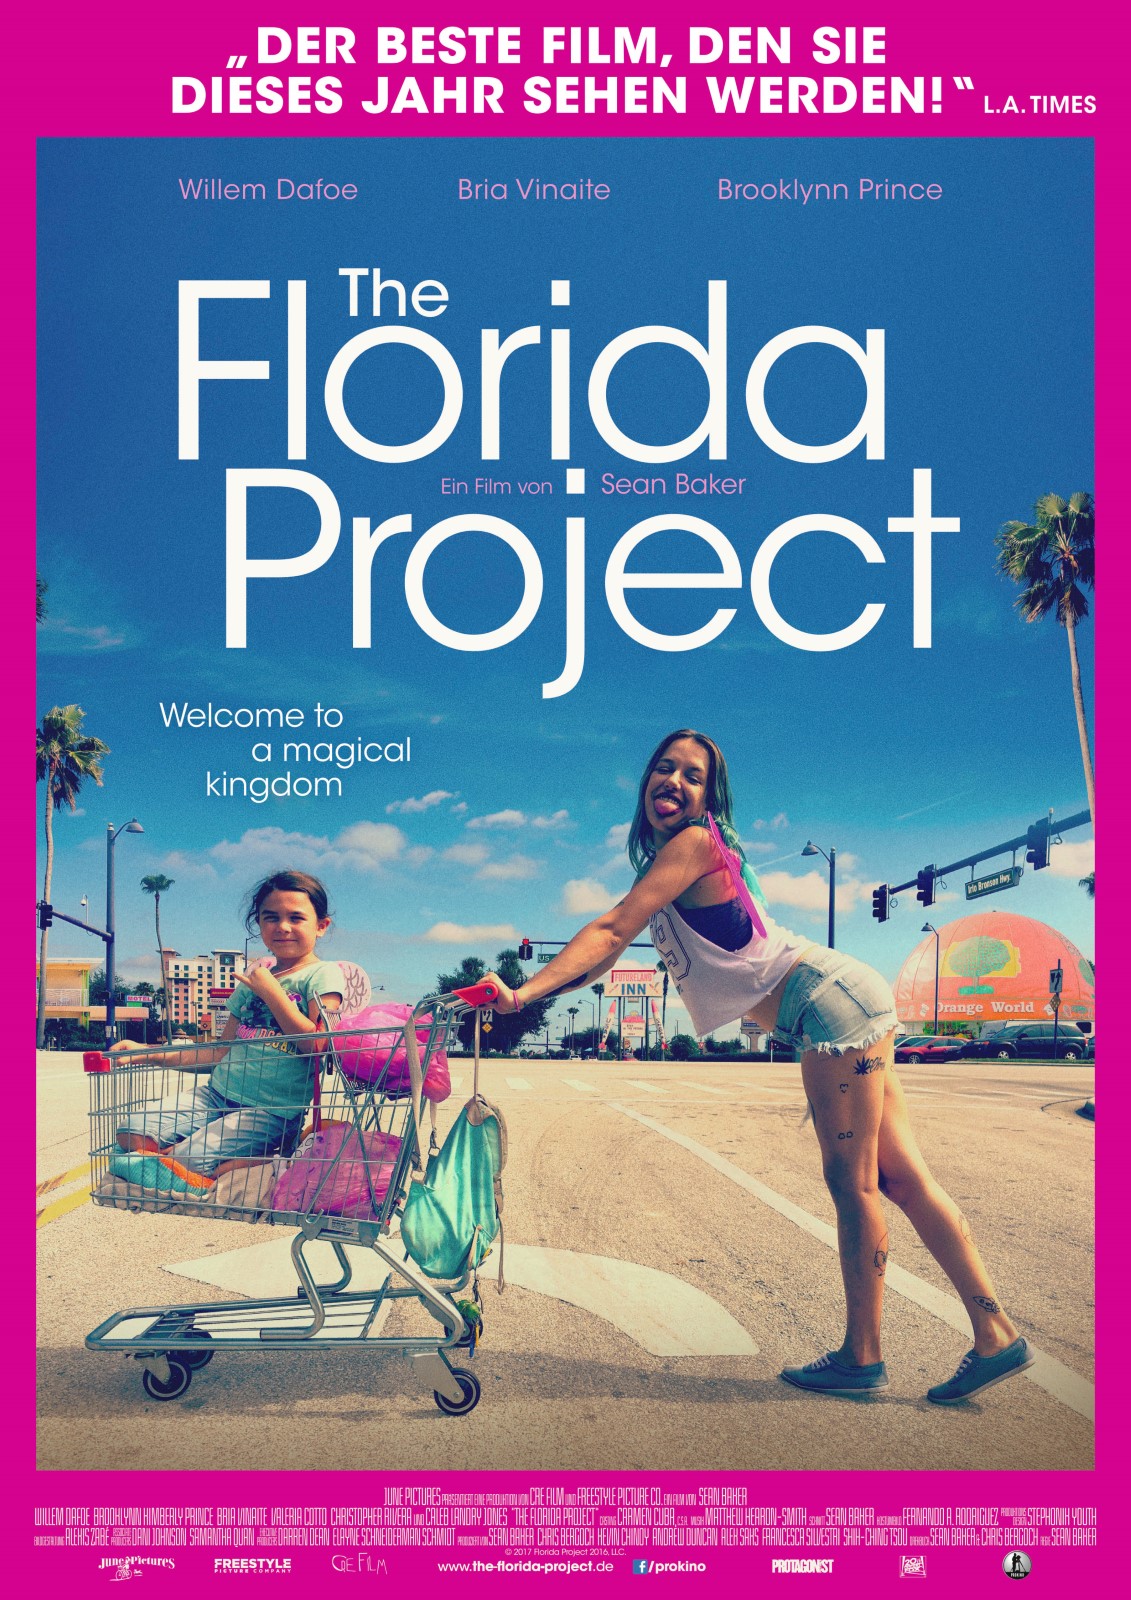 Auf dem Filmplakat sieht man eine Frau, die lachend einen Einkaufswagen schiebt in dem ein junges Mädchen sitzt. 